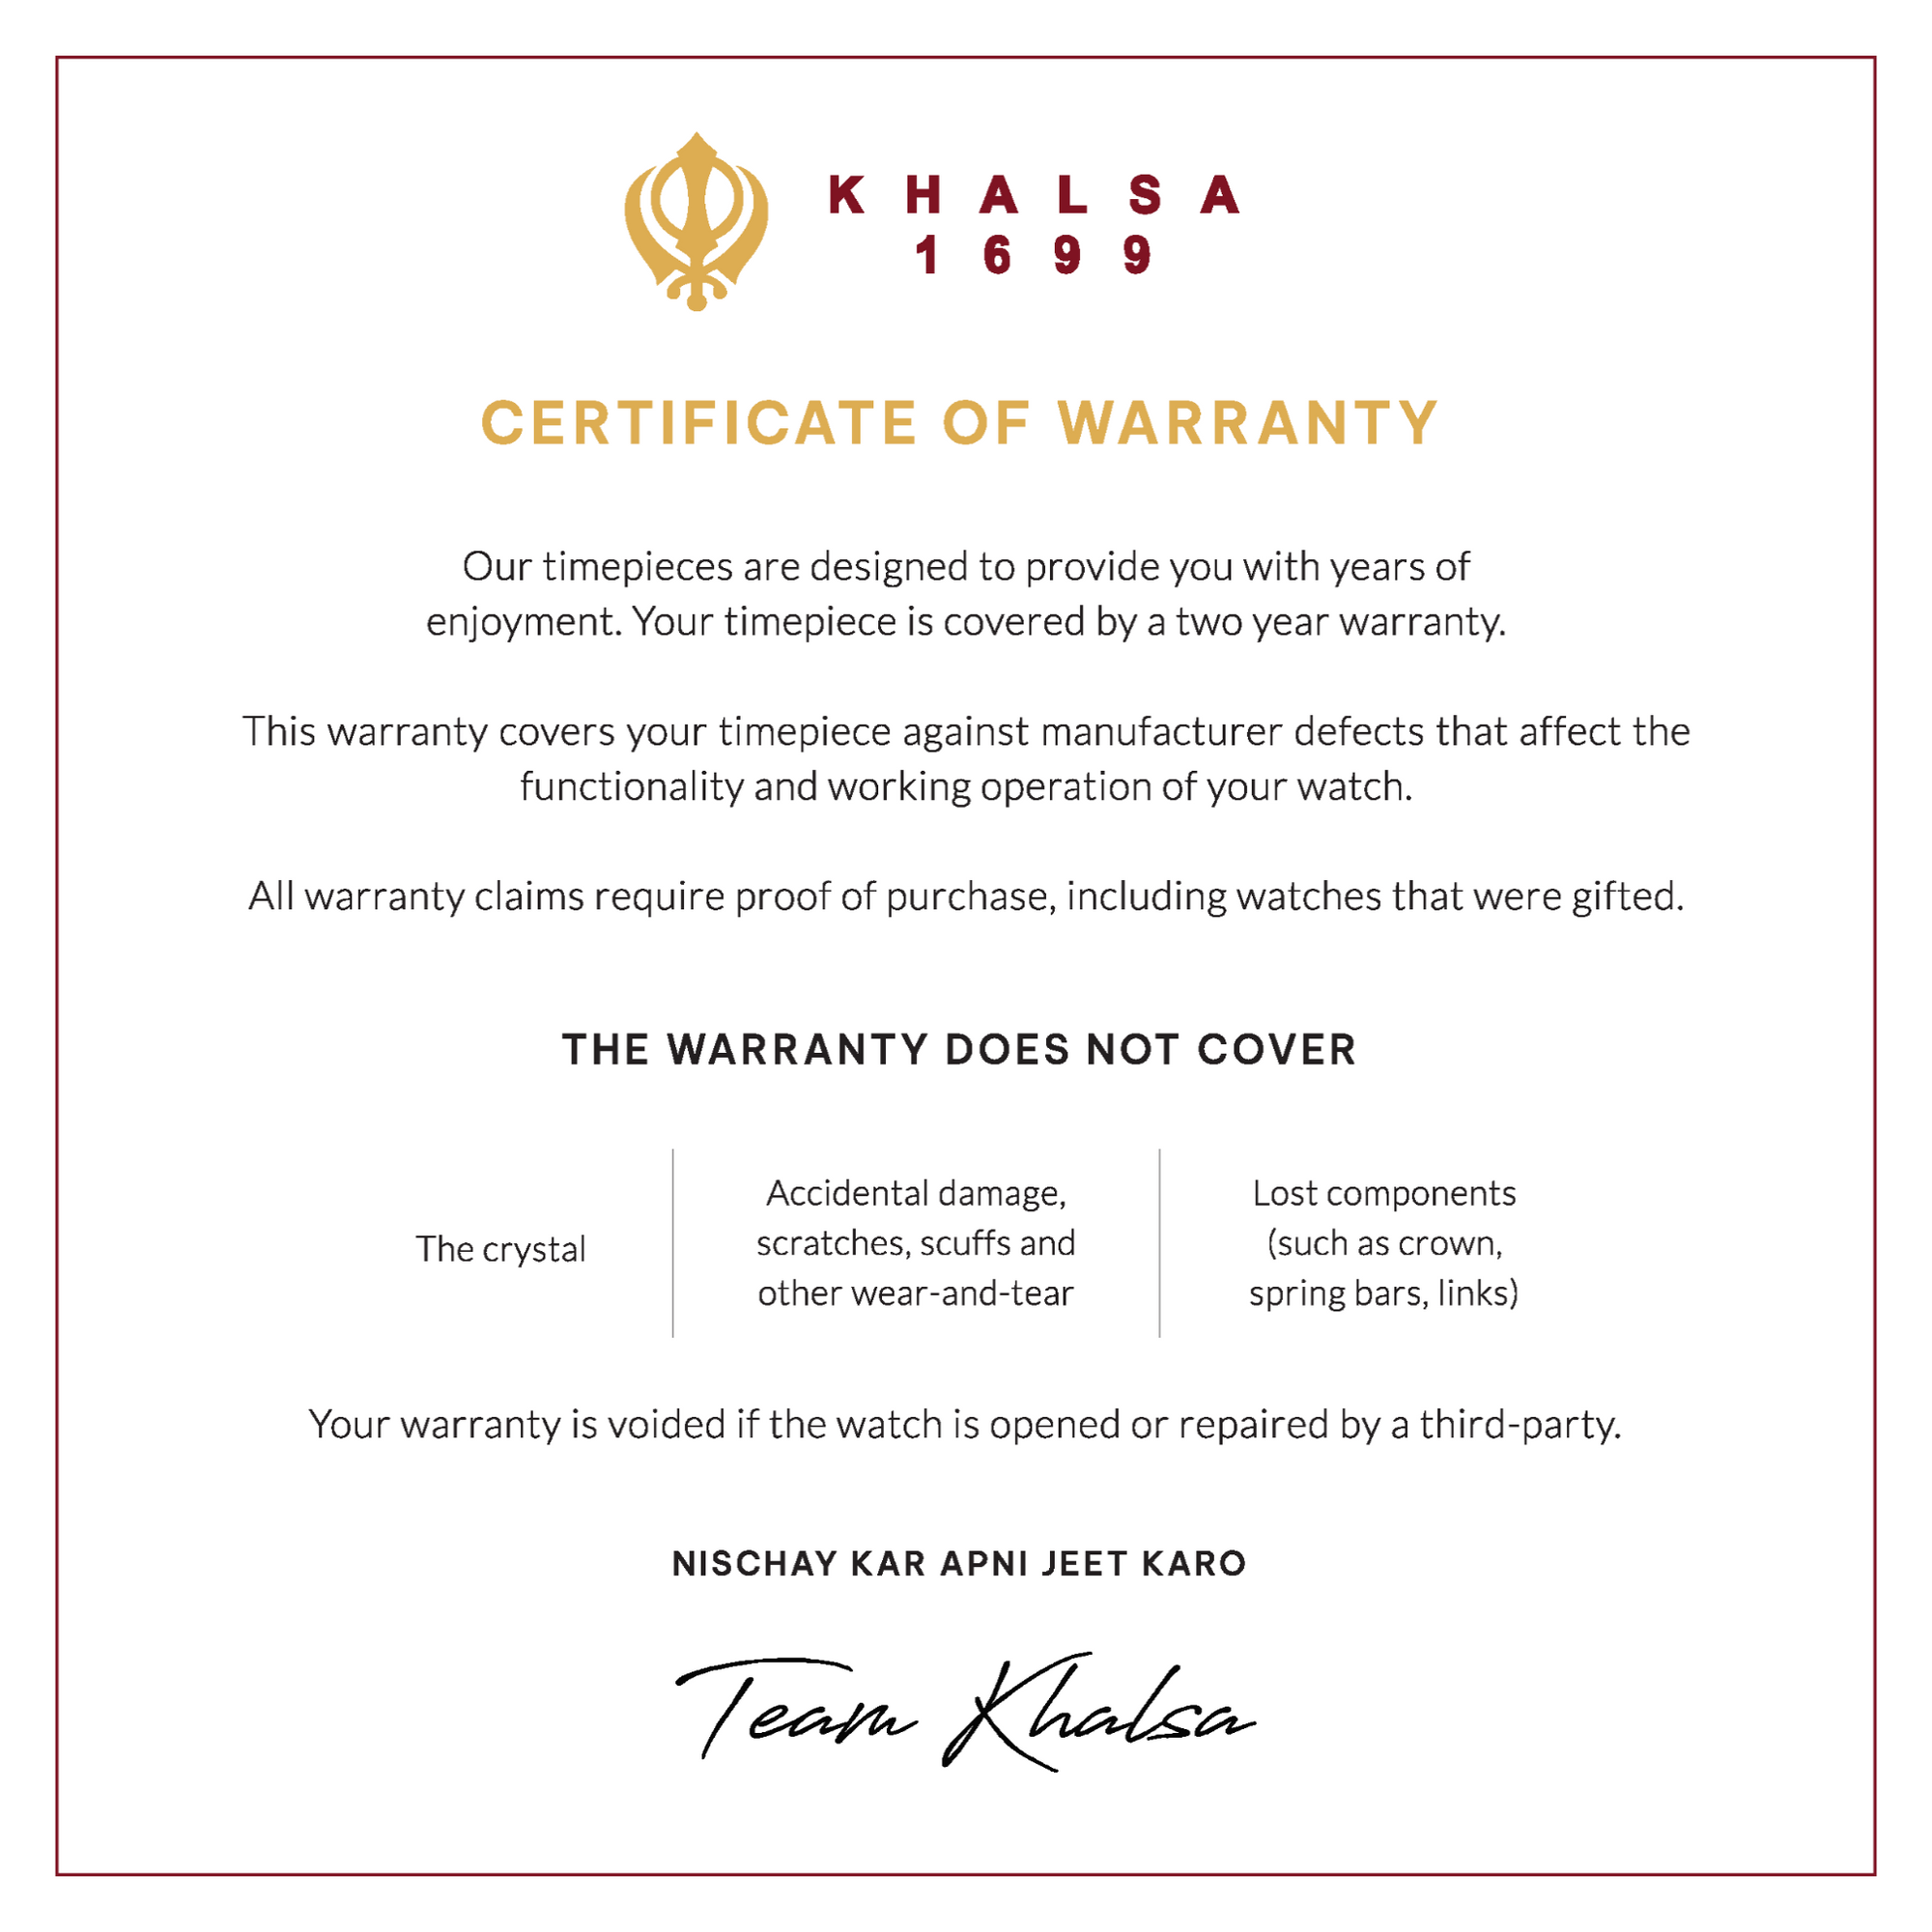 Certificate of warranty house of khalsa